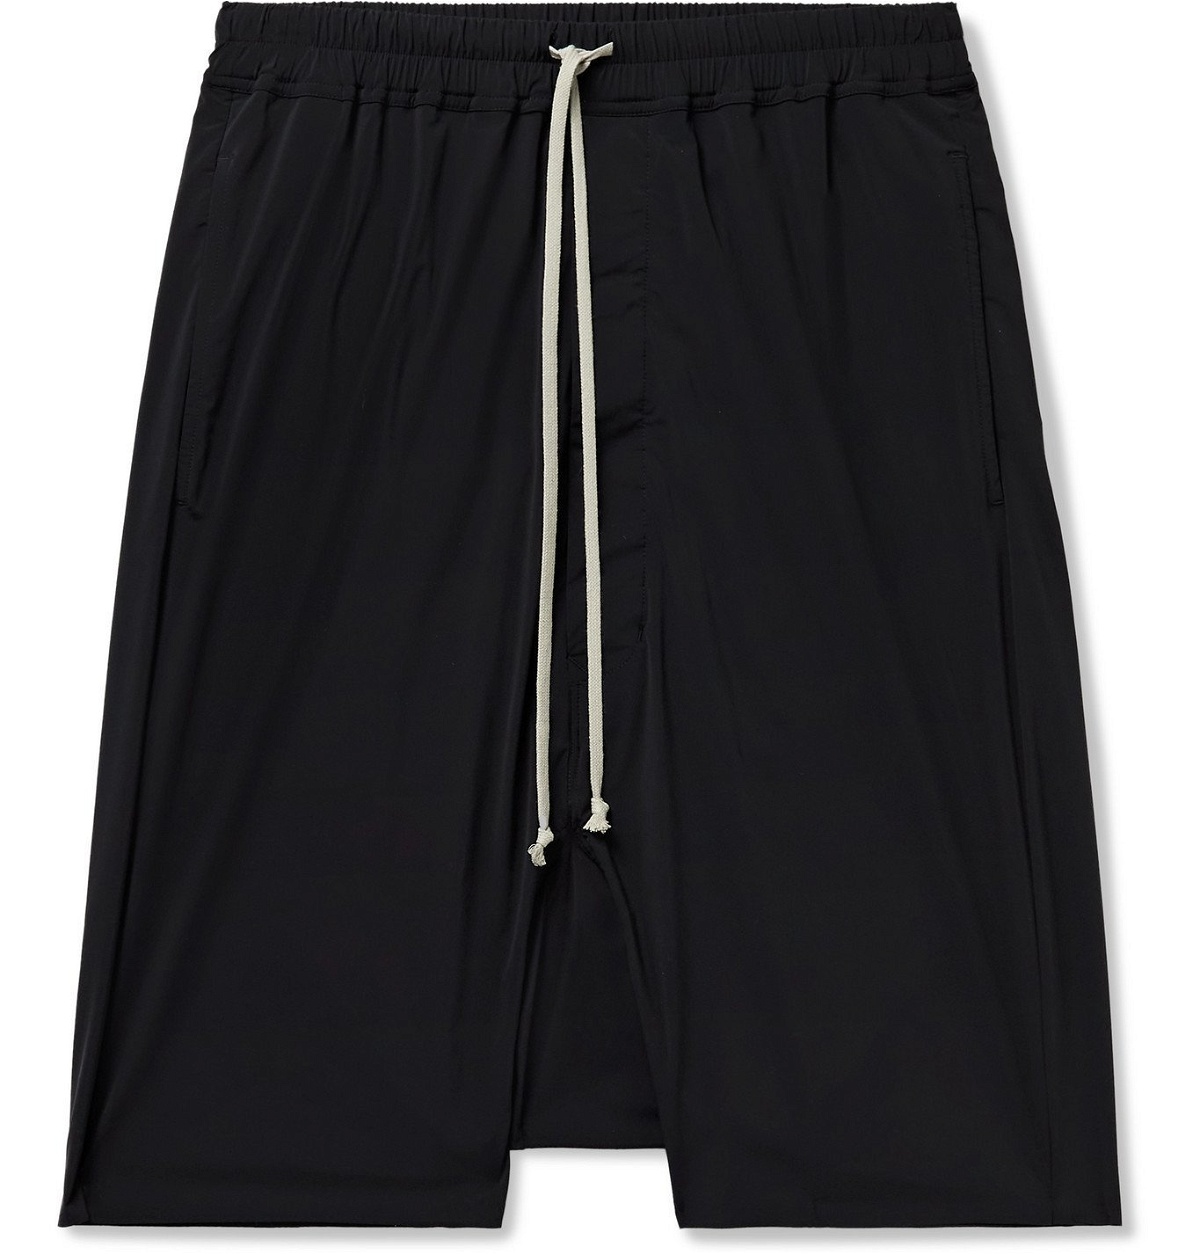 RICK OWENS - DRKSHDW Pods Stretch-Nylon Drawstring Shorts - Black